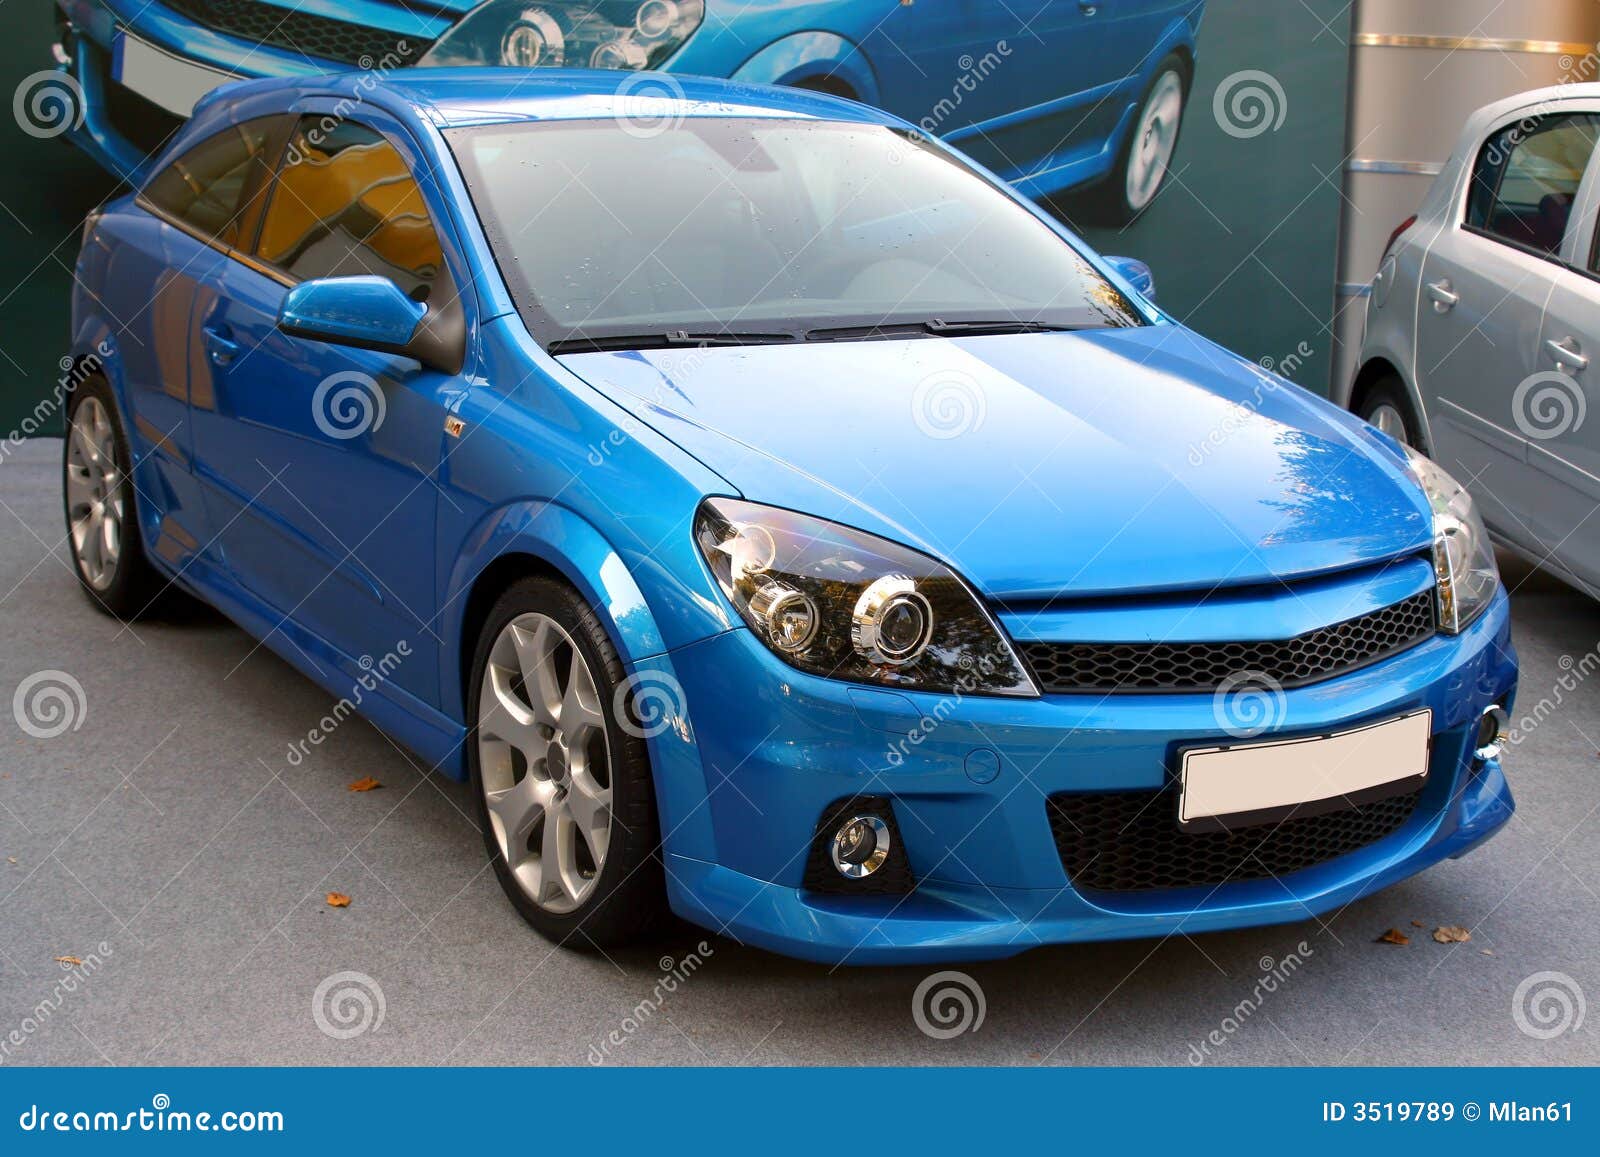 Carro azul novo imagem de stock Imagem de autom vel 